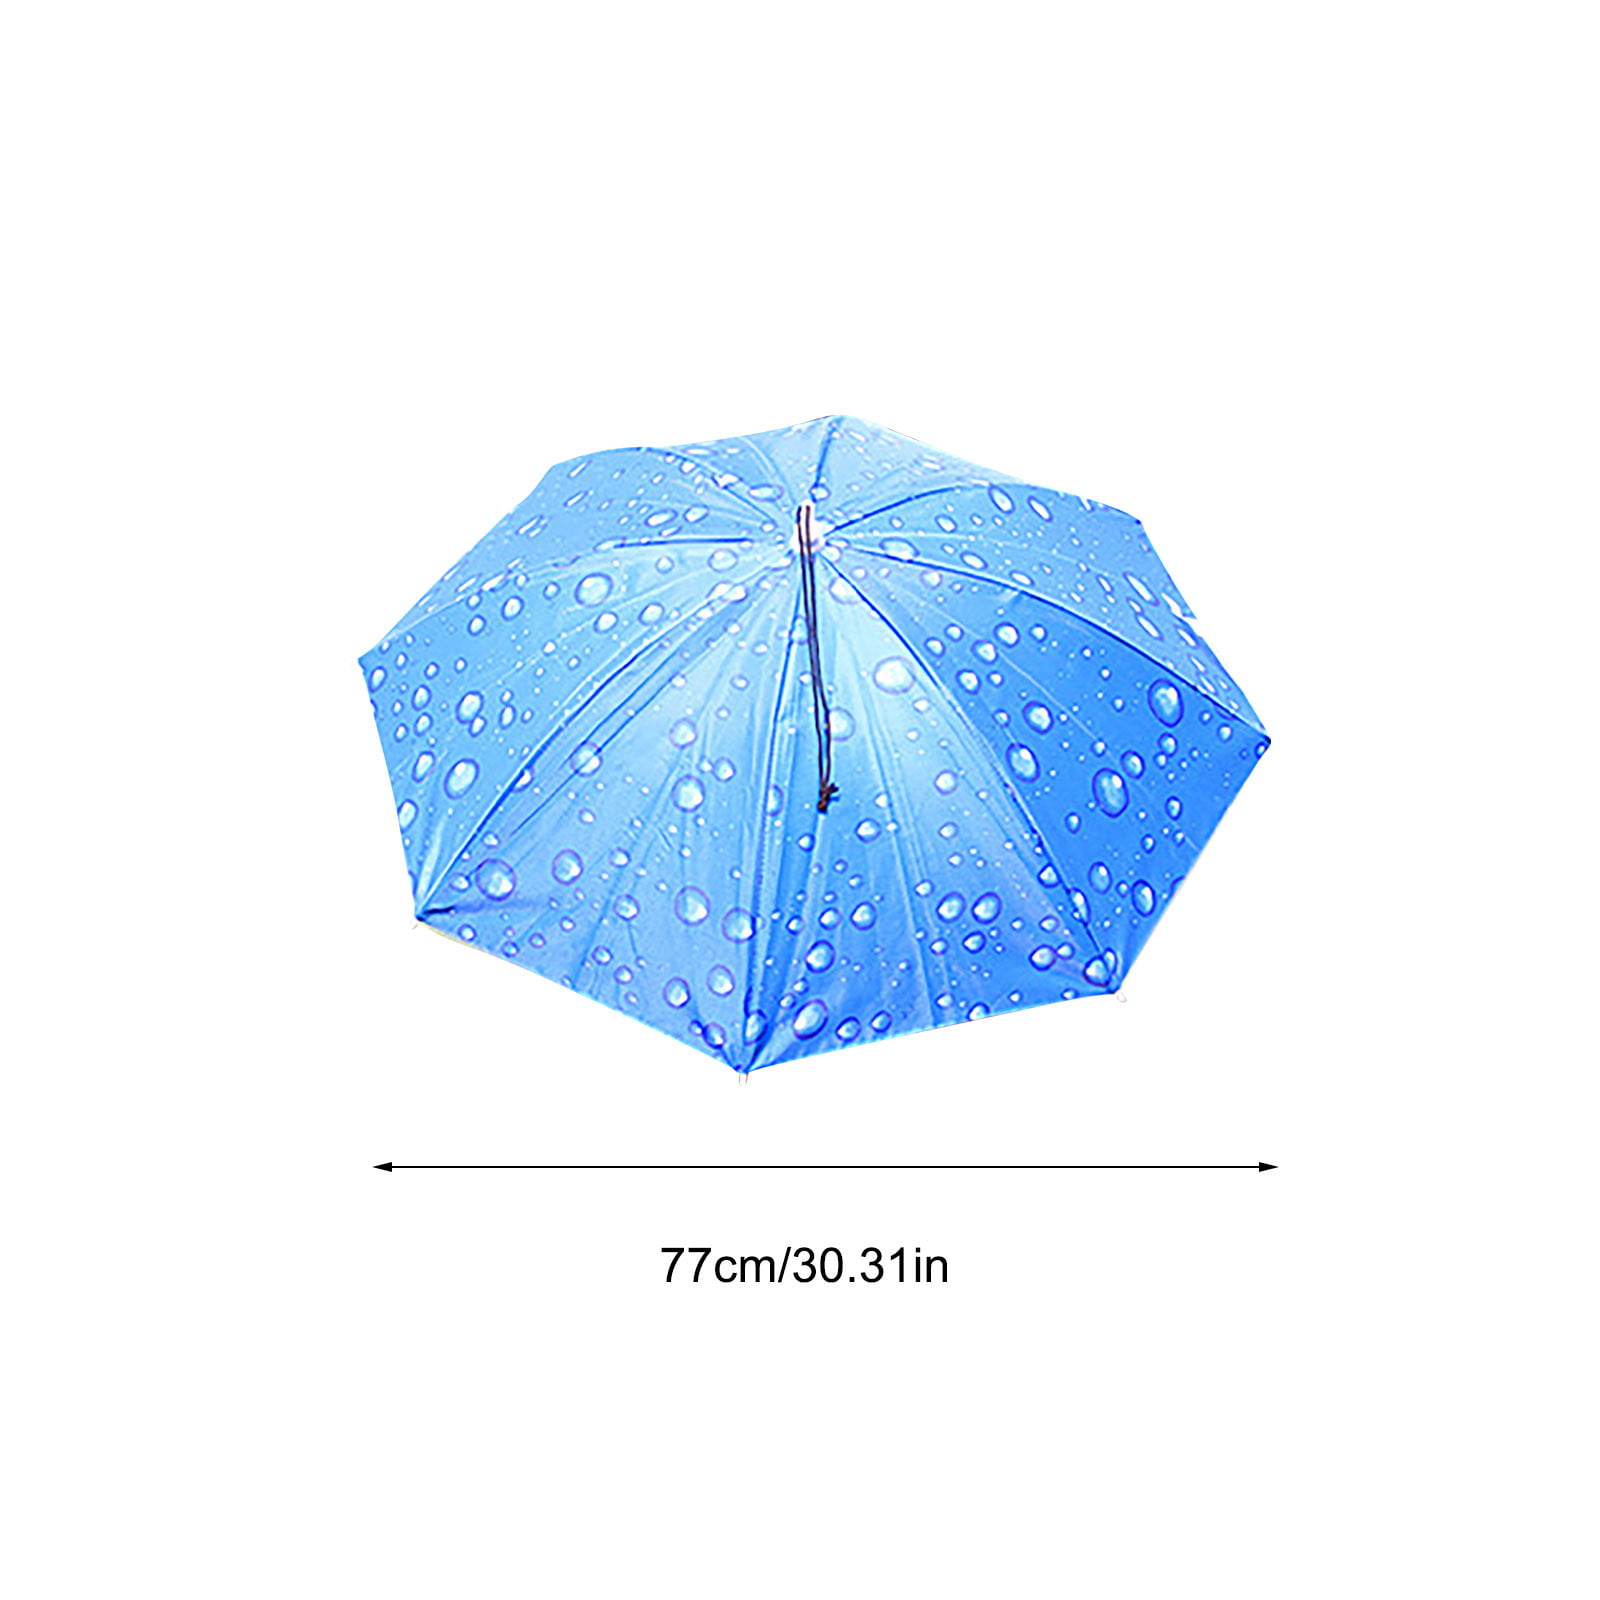 Folding Umbrella Rainproof & Windprrof Umbrella Natural Scenery Custom Umbrella Automatic